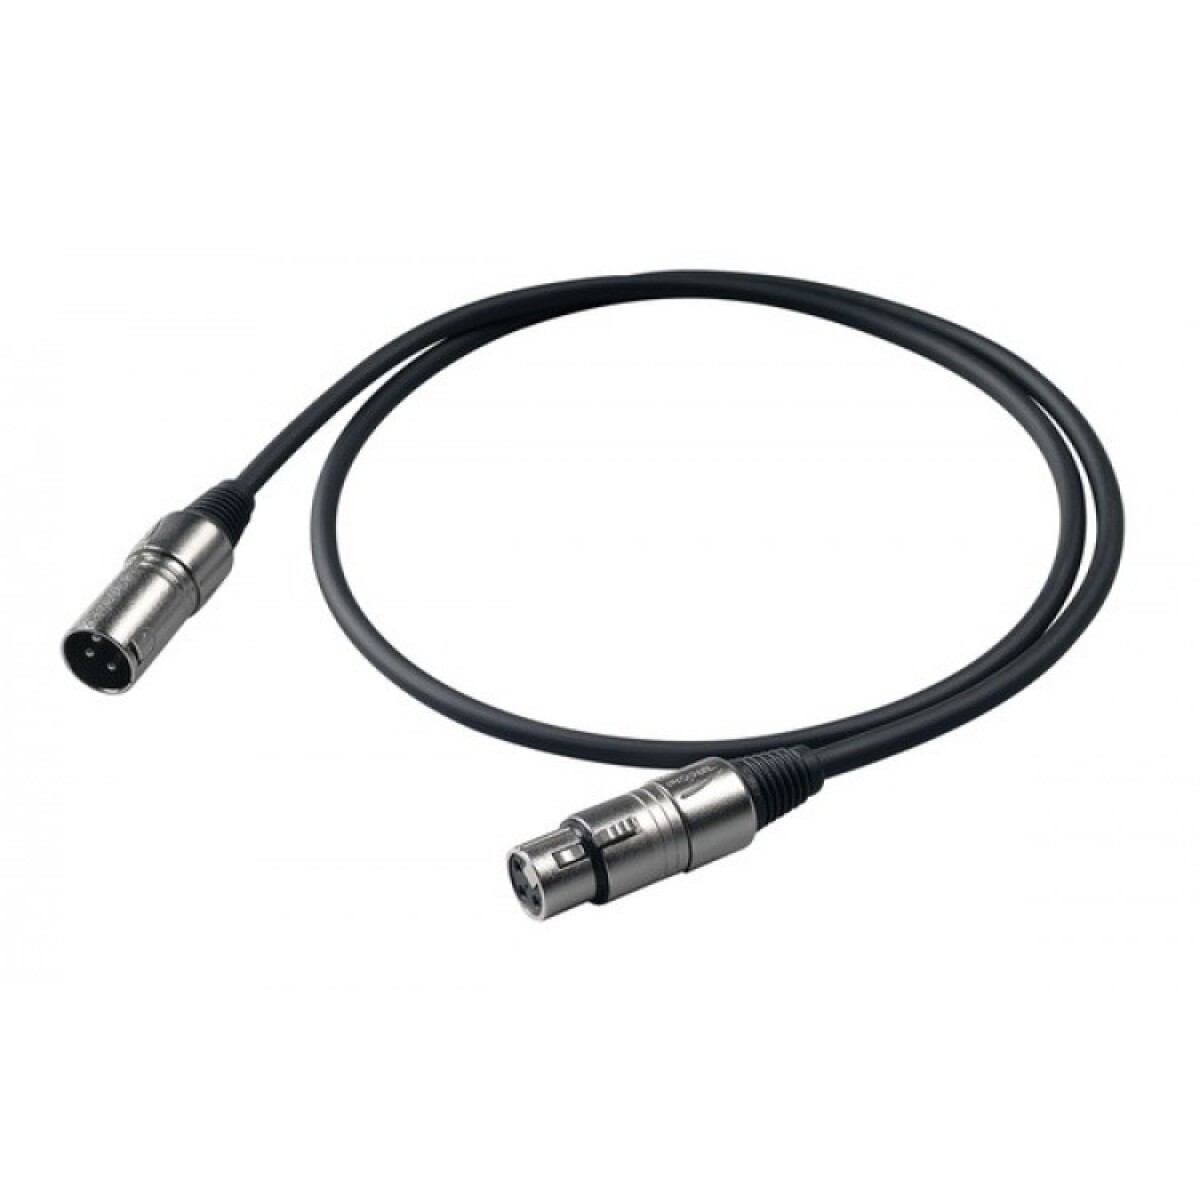 Cable Micrófono Proel Bulk250lu05 0.5mts Xlr- Xlr 